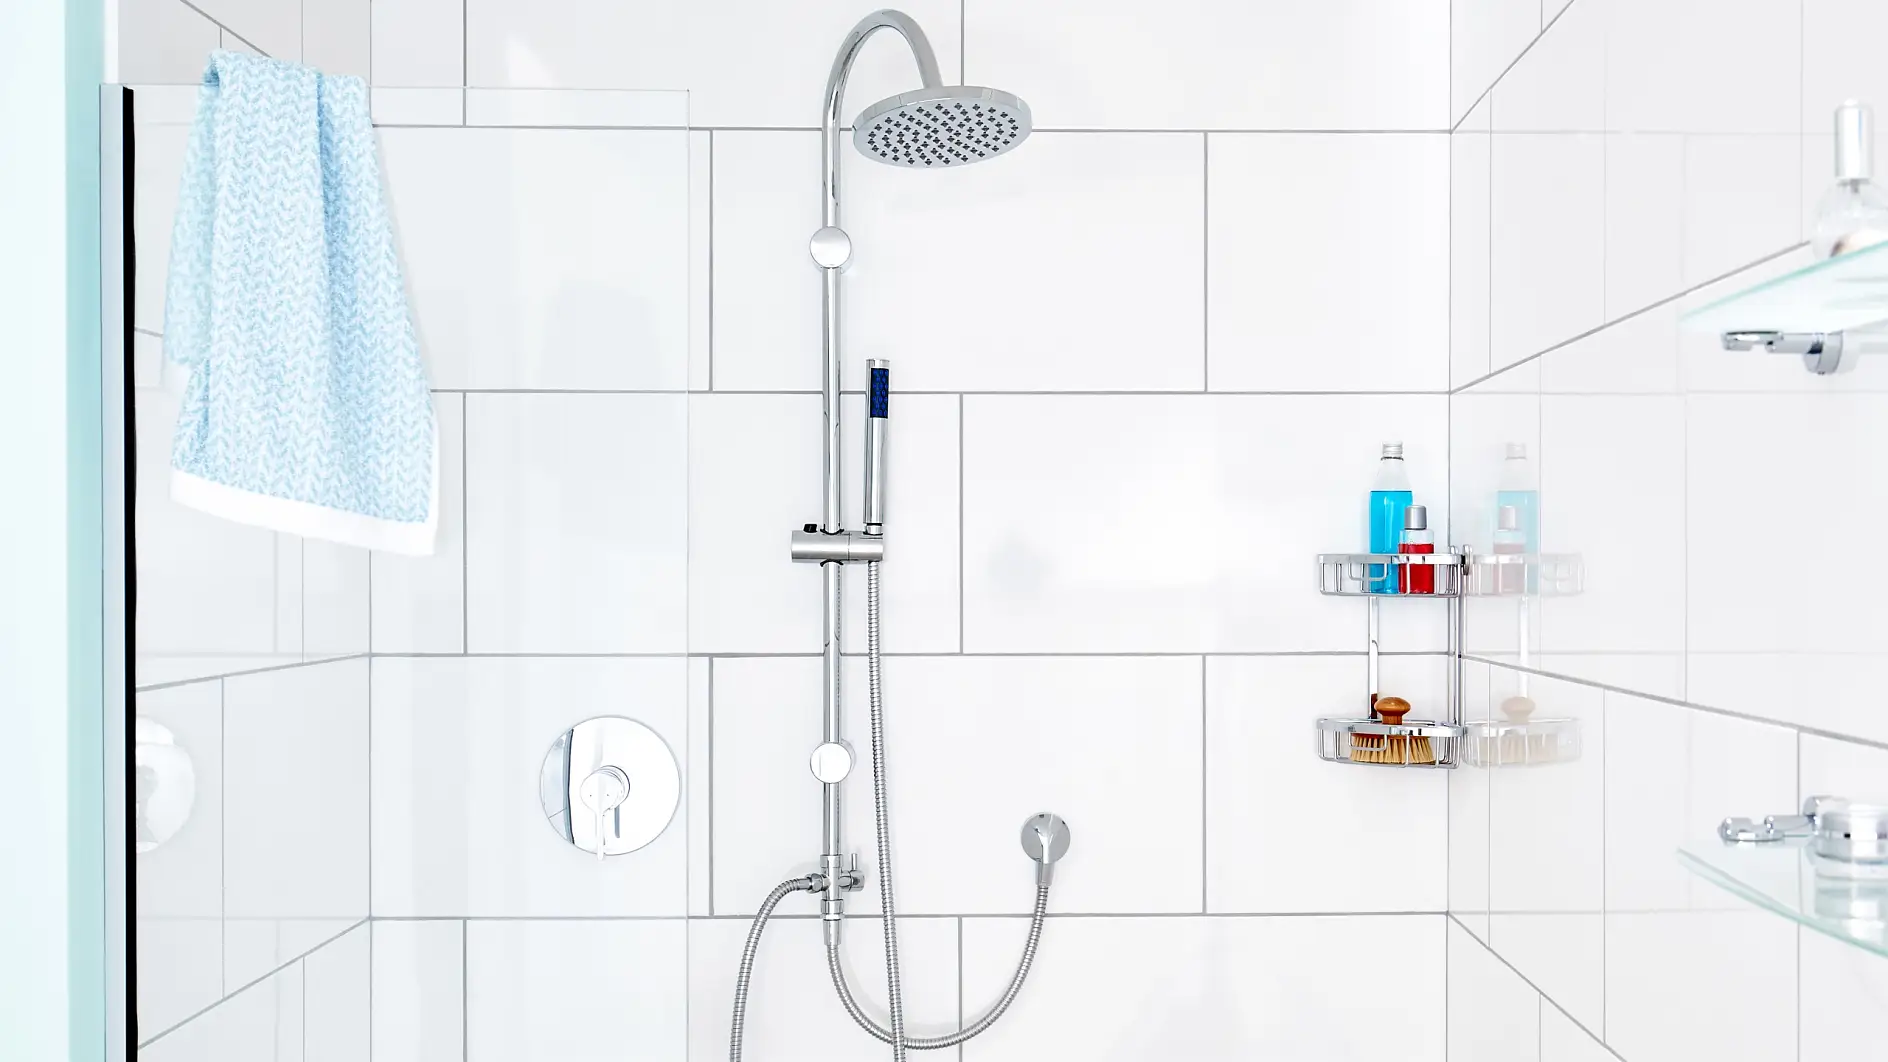 Ústredná časť vašej sprchy. Minimalistický dizajn našej sprchovej tyče optimalizuje pohyb a zážitky v sprche.